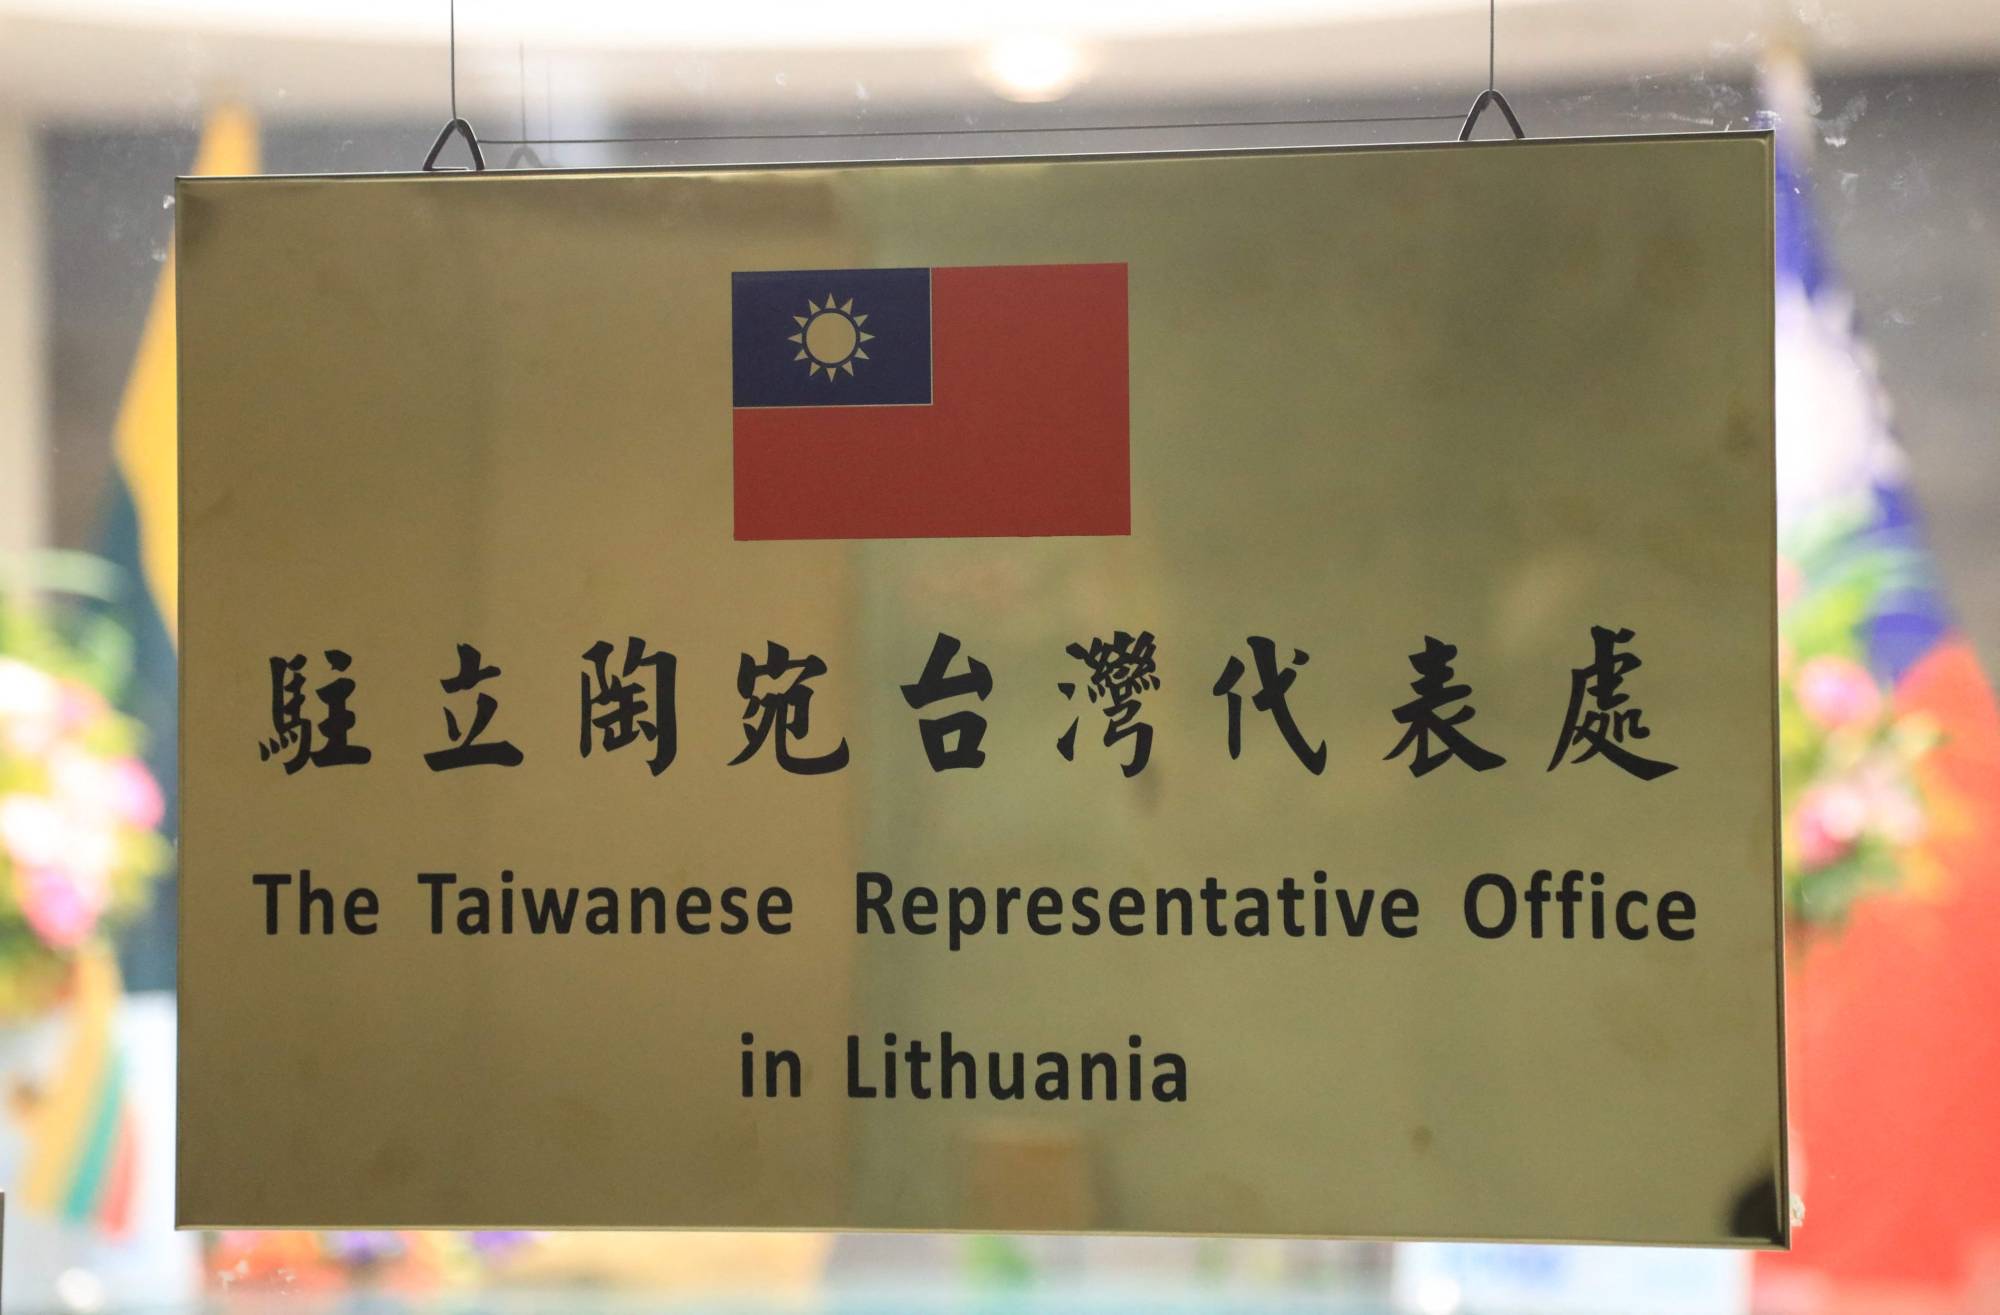 ताइवानी प्रतिनिधिको कार्यालय खोल्न दिएपछि लिथुआनियासँग रुष्ट चीन, आवश्यक कदम उठाउने चेतावनी